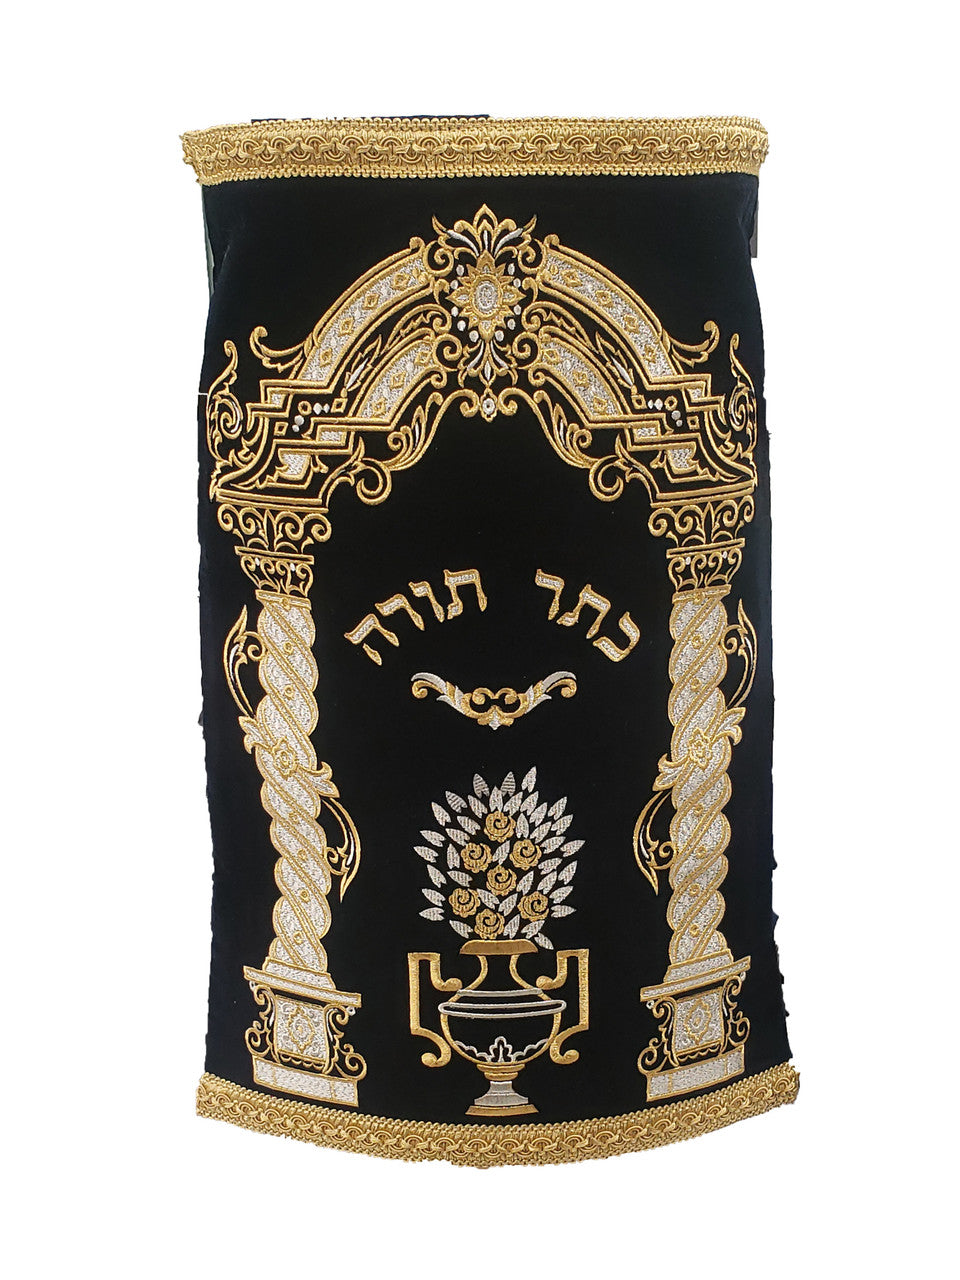 Sefer Torah Mantel #313